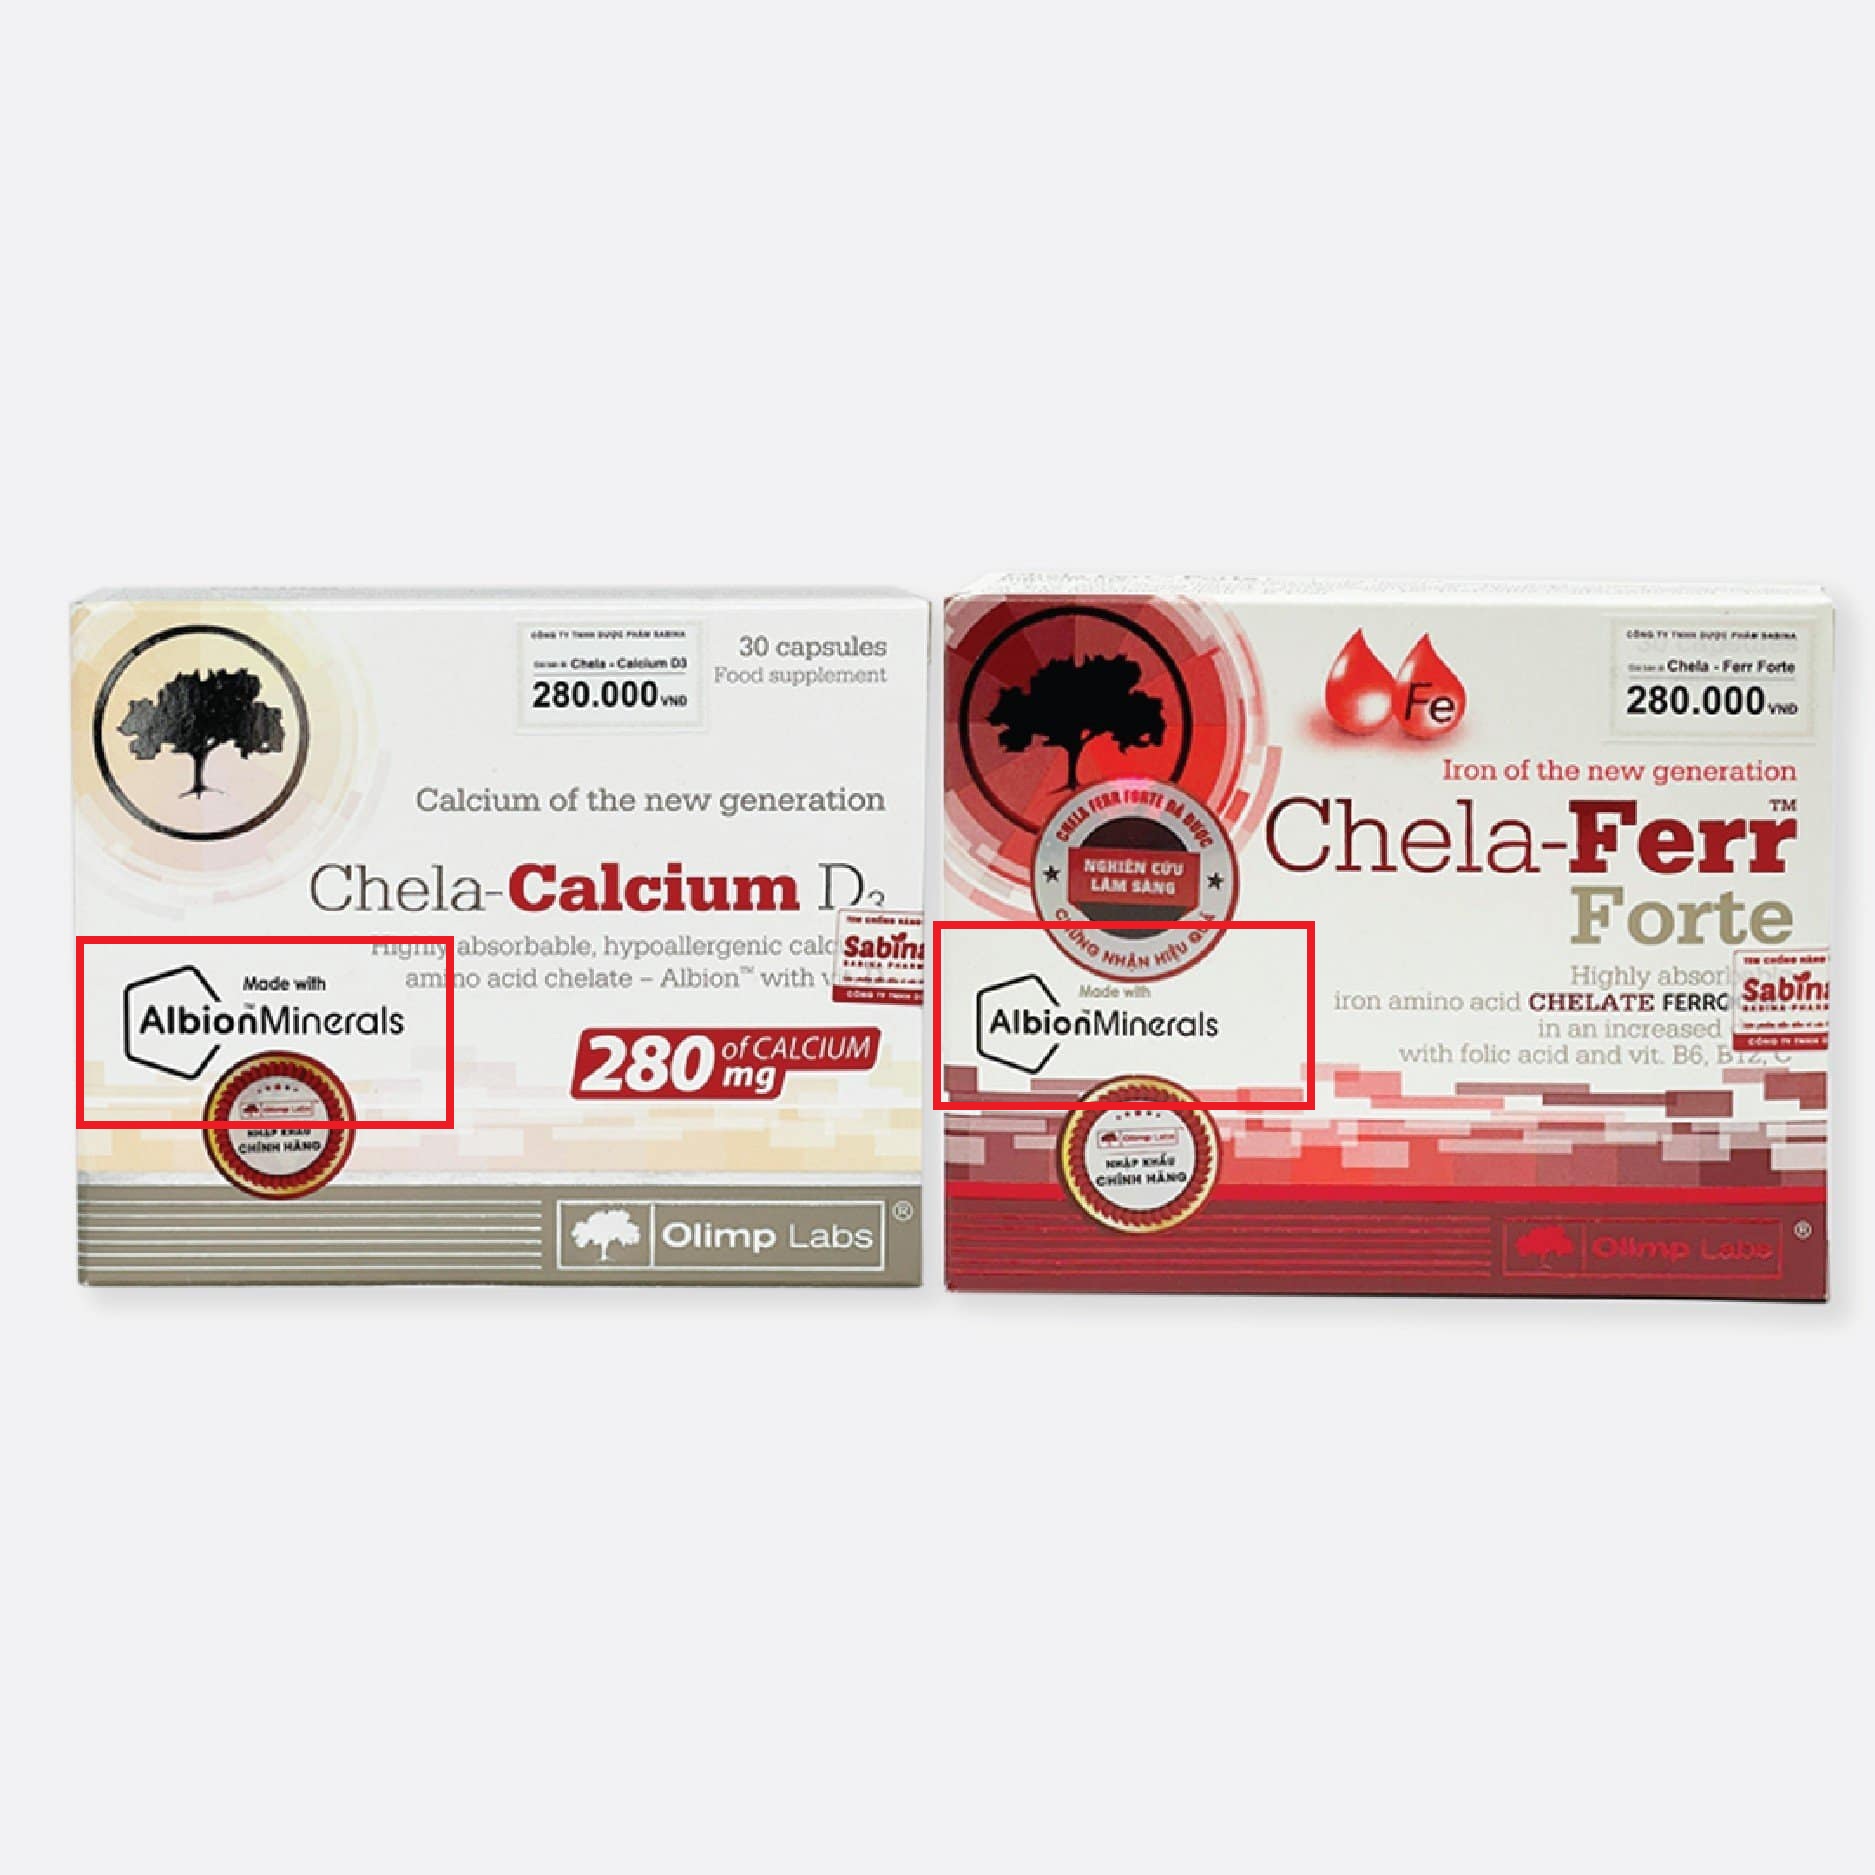 Viên sắt Chela-Ferr Forte và canxi Chela-Calcium D3 chính hãng